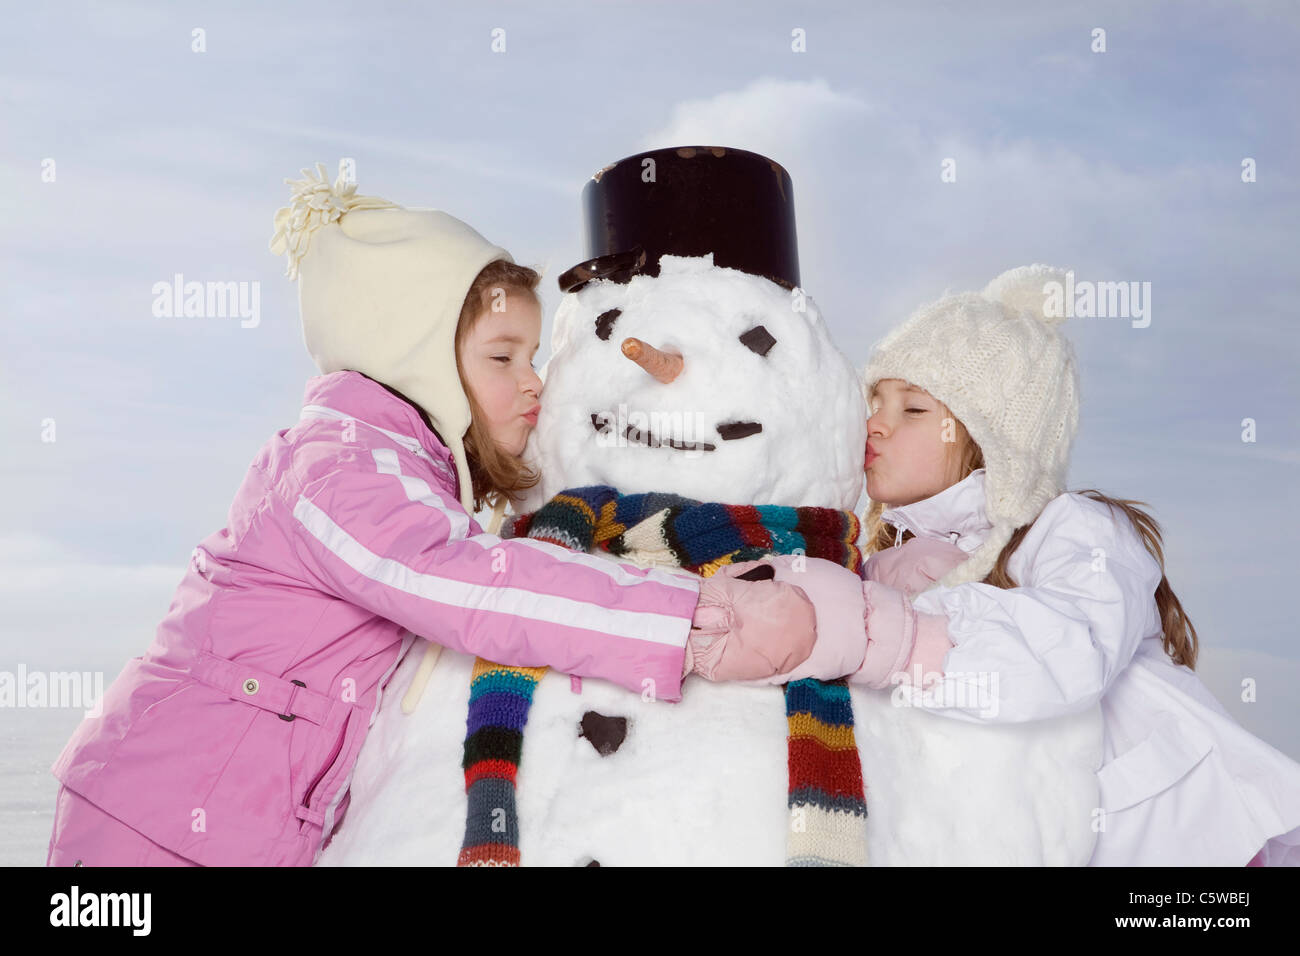 Germany, Bavaria, Munich, deux filles (4-5) (8-9) kissing snowman, les yeux clos, portrait Banque D'Images